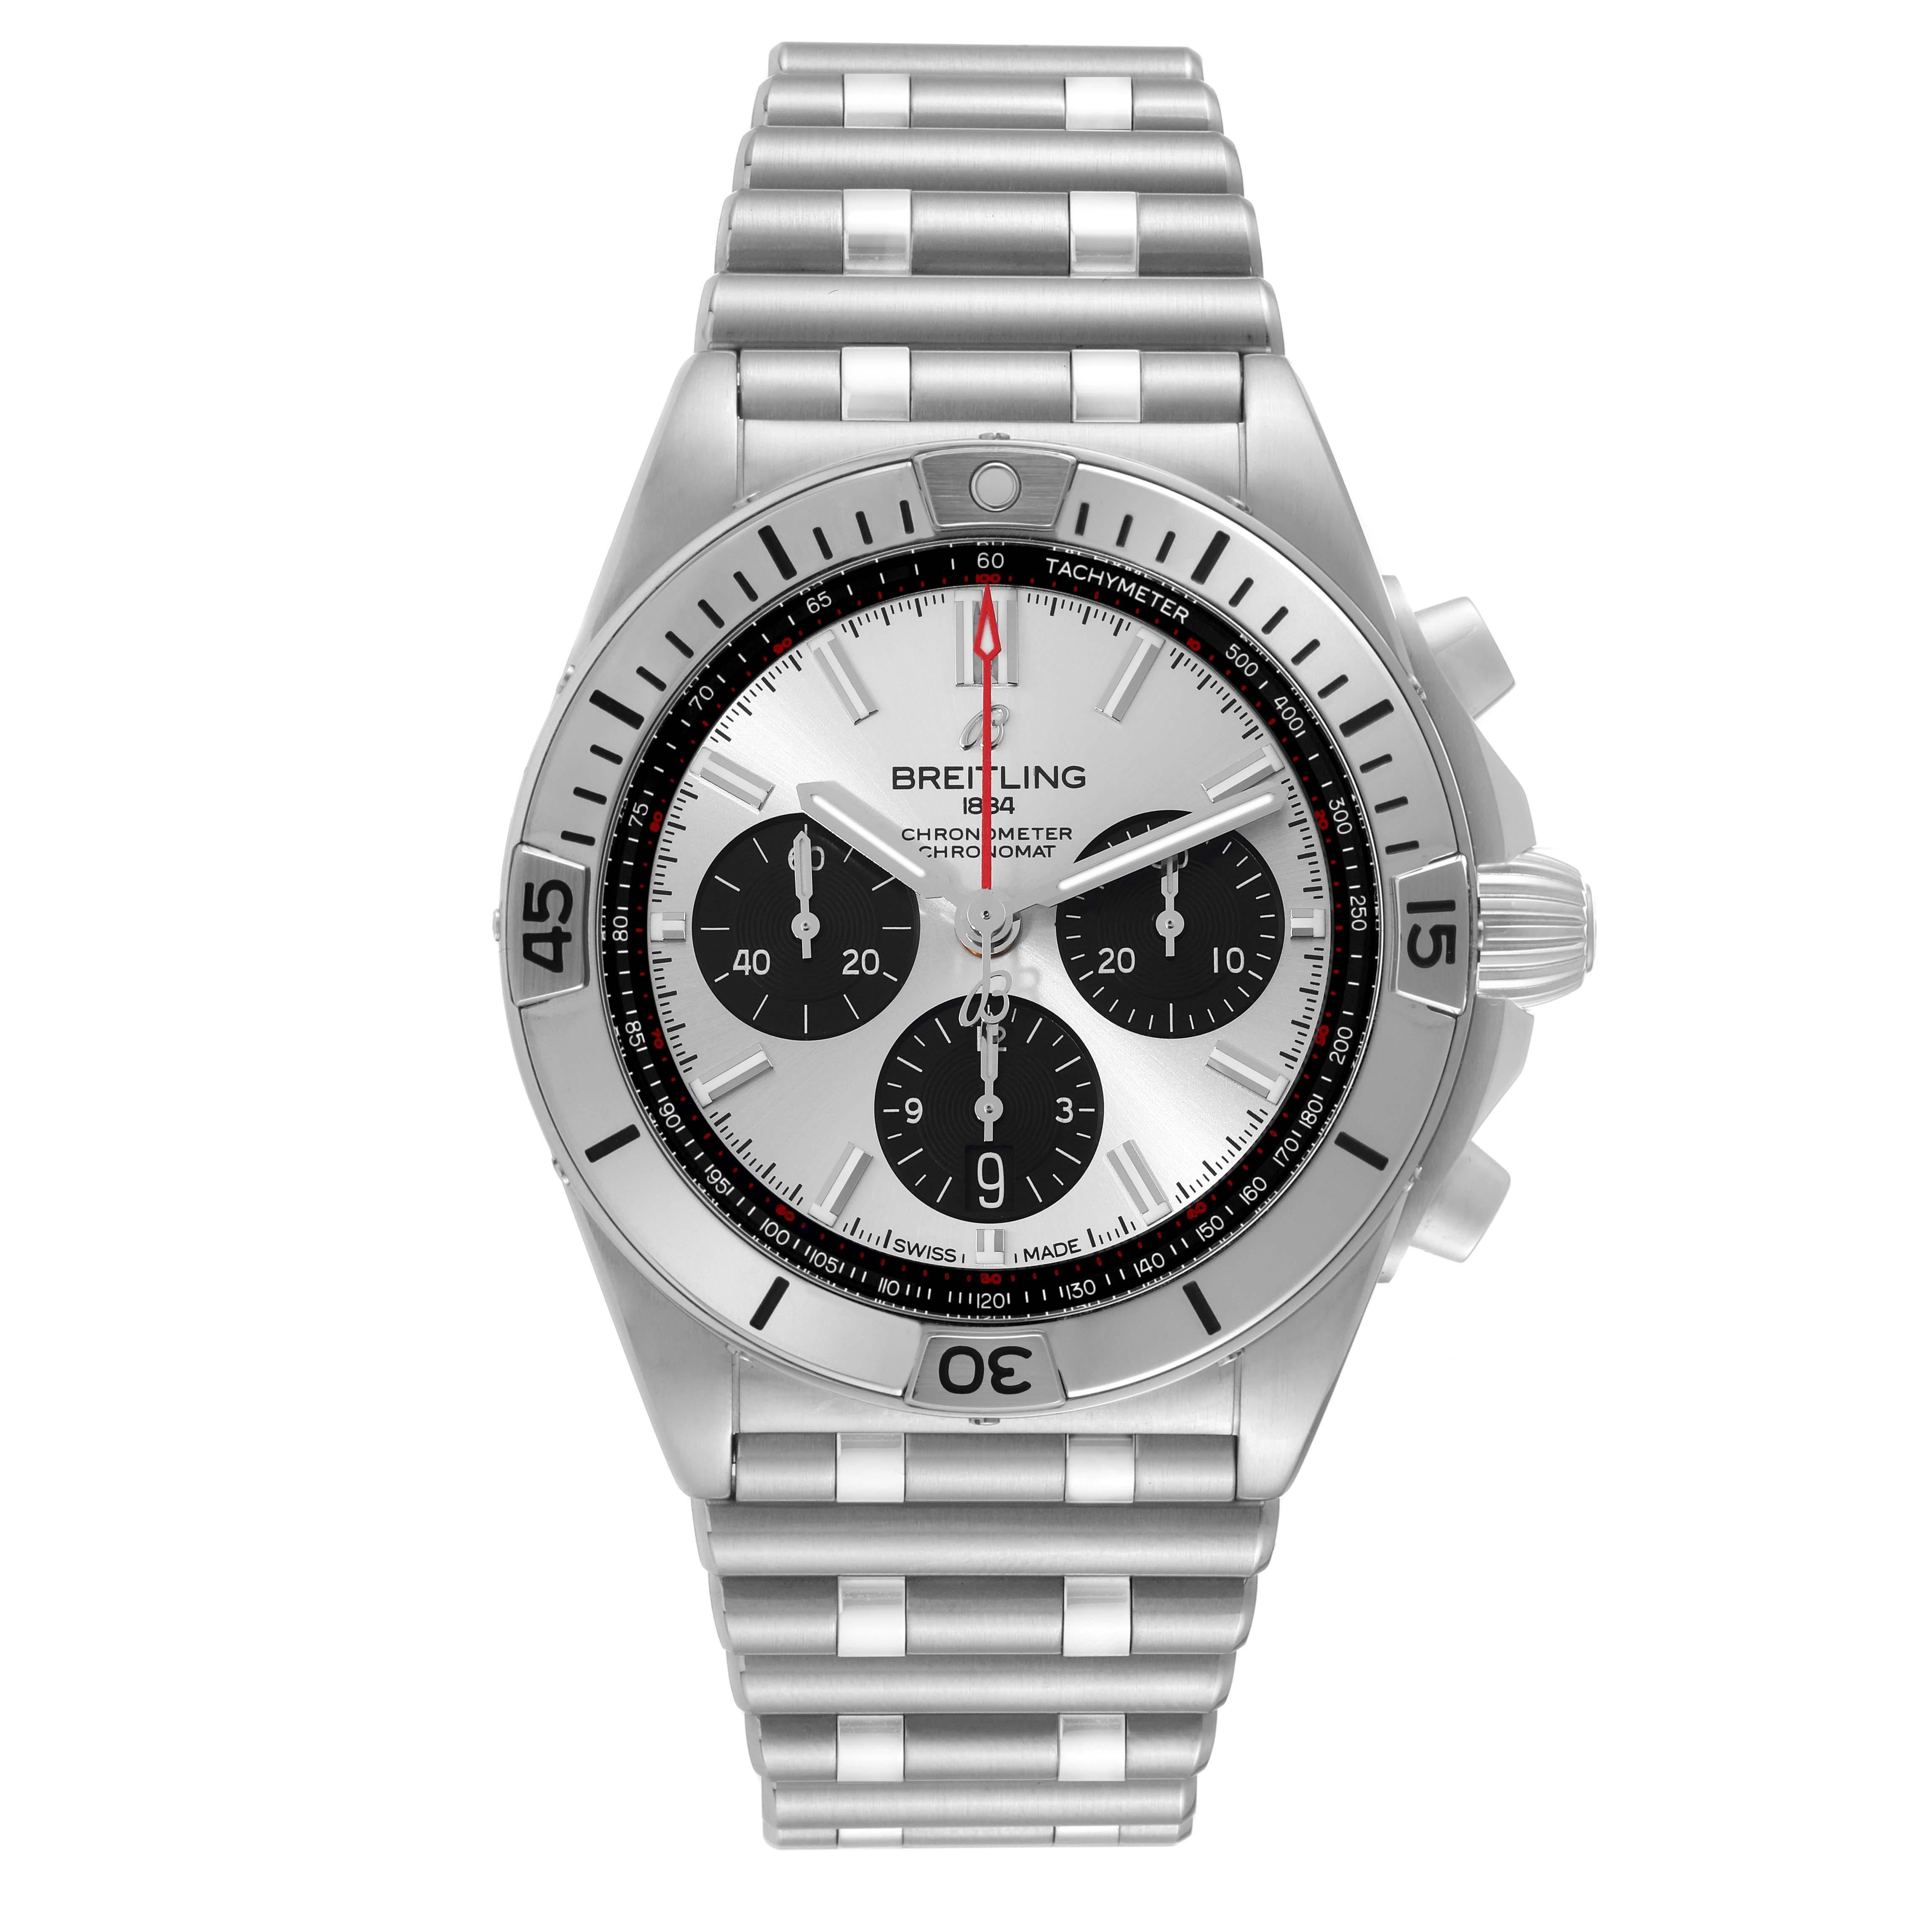 Breitling Chronomat B01 Silver Dial Steel Mens Watch AB0134 Box Card. Mouvement automatique à remontage automatique, officiellement certifié chronomètre. Fonction chronographe. Boîtier en acier inoxydable de 42.0 mm de diamètre avec couronne et